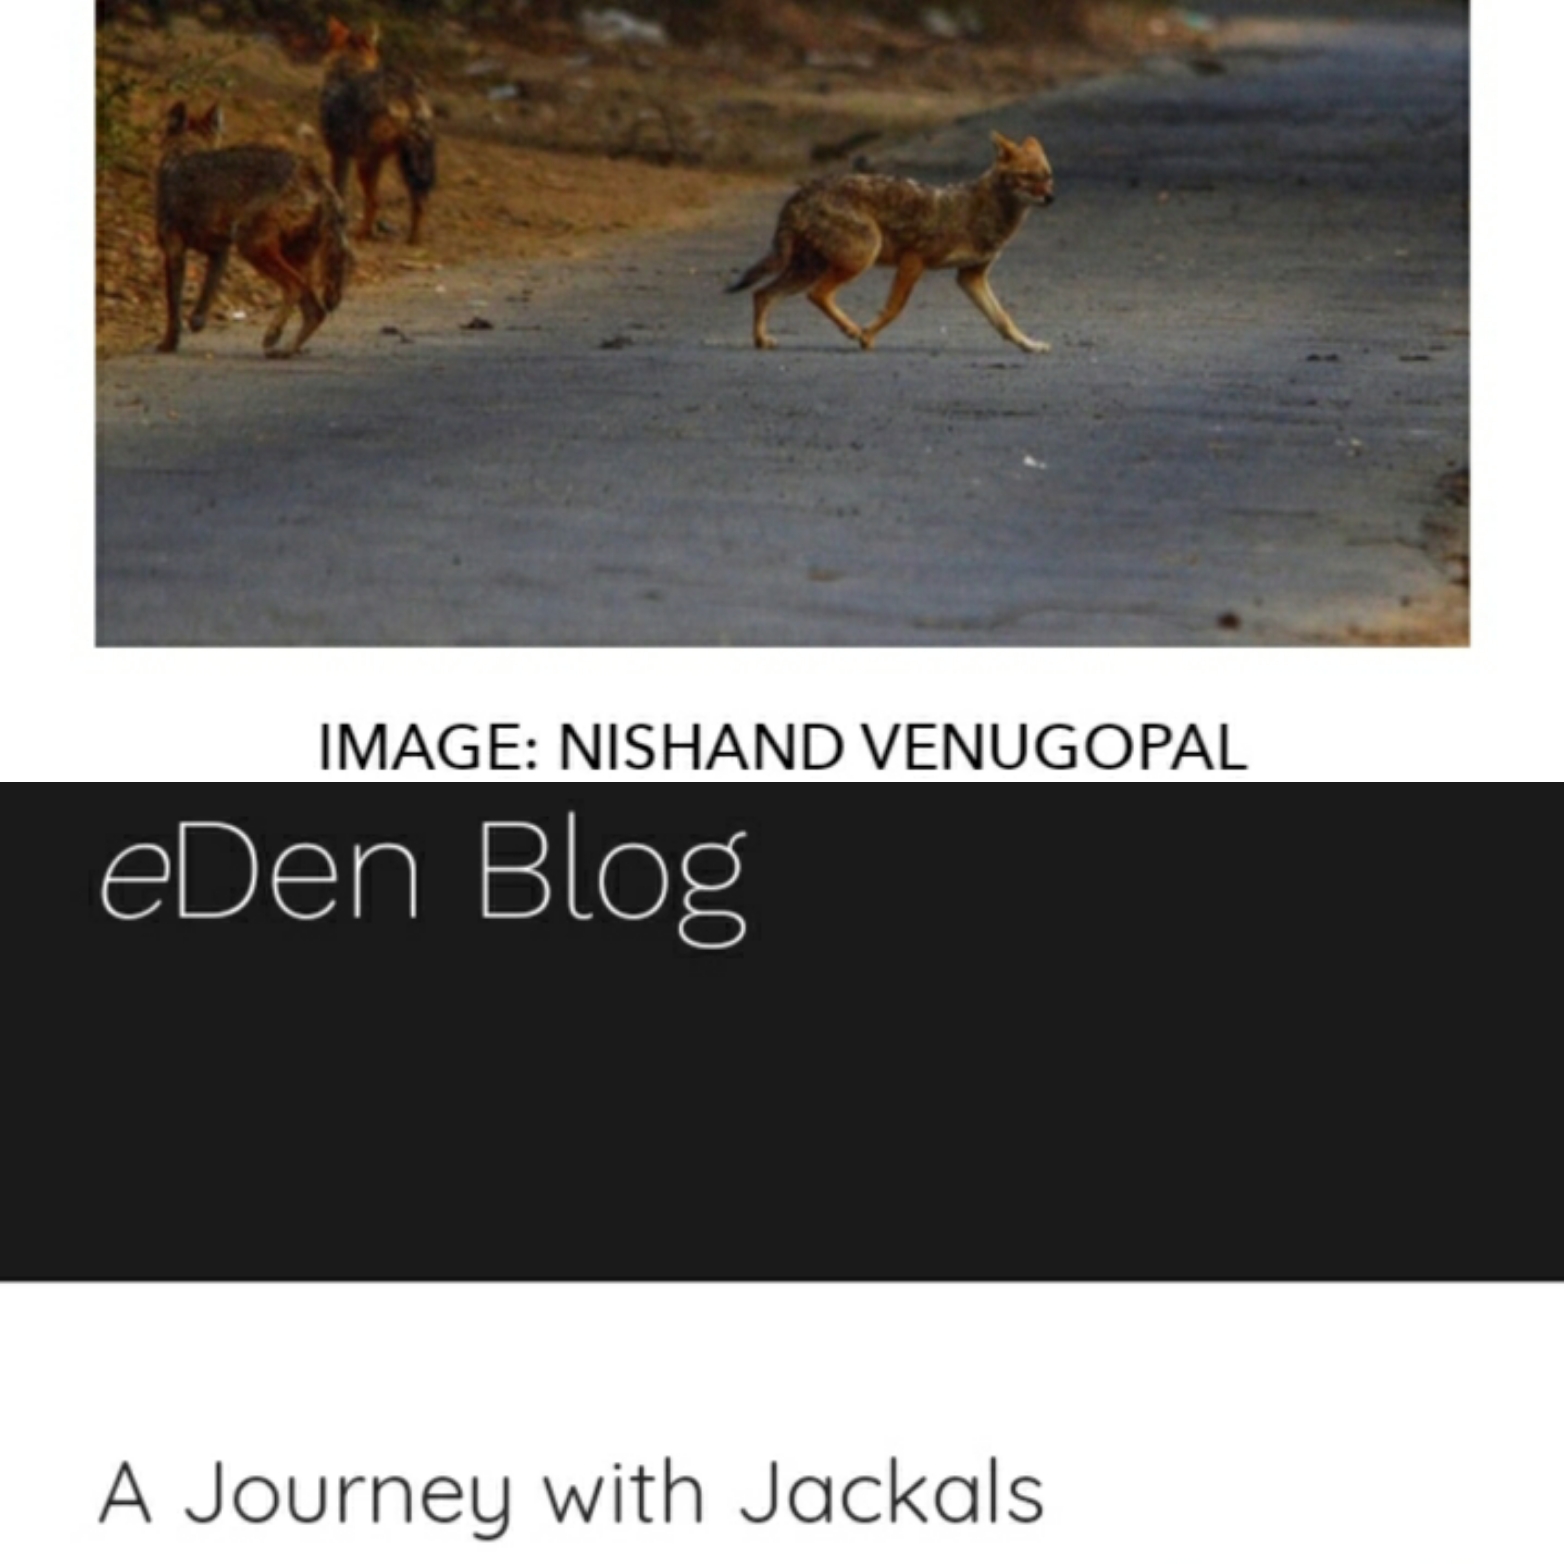 Watching jackals in Delhi